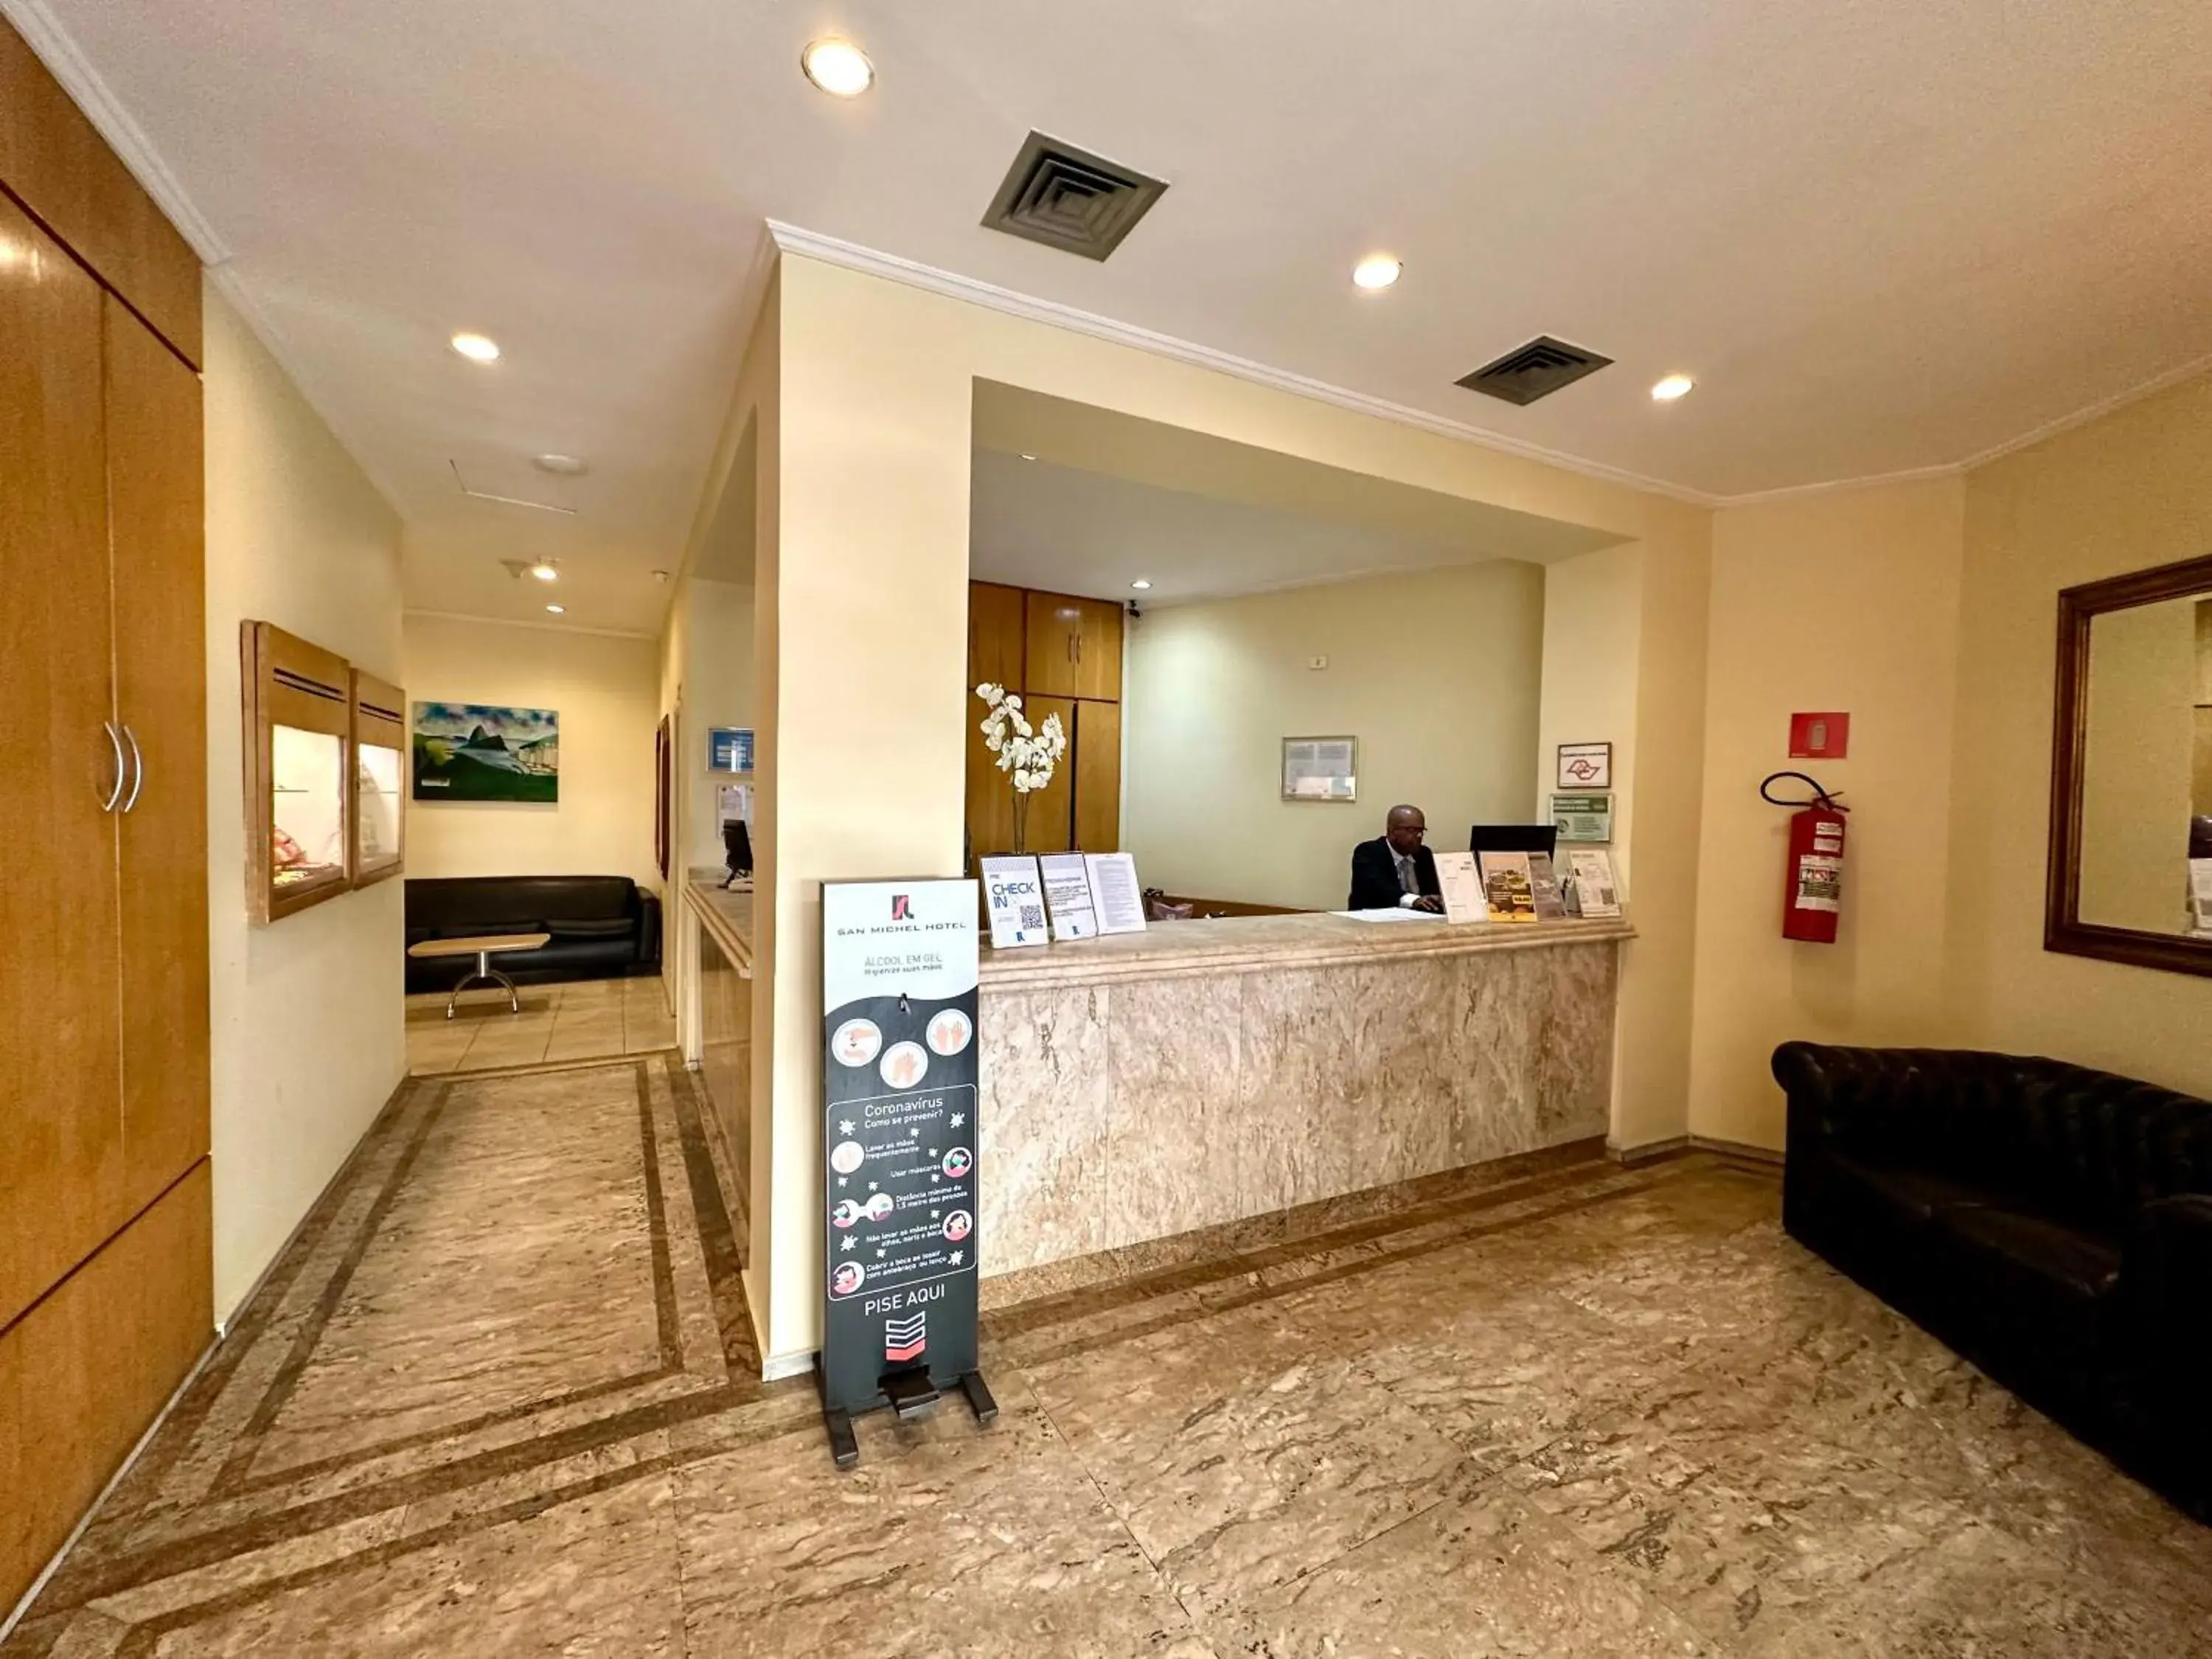 Lobby or reception, Lobby/Reception in San Michel Hotel